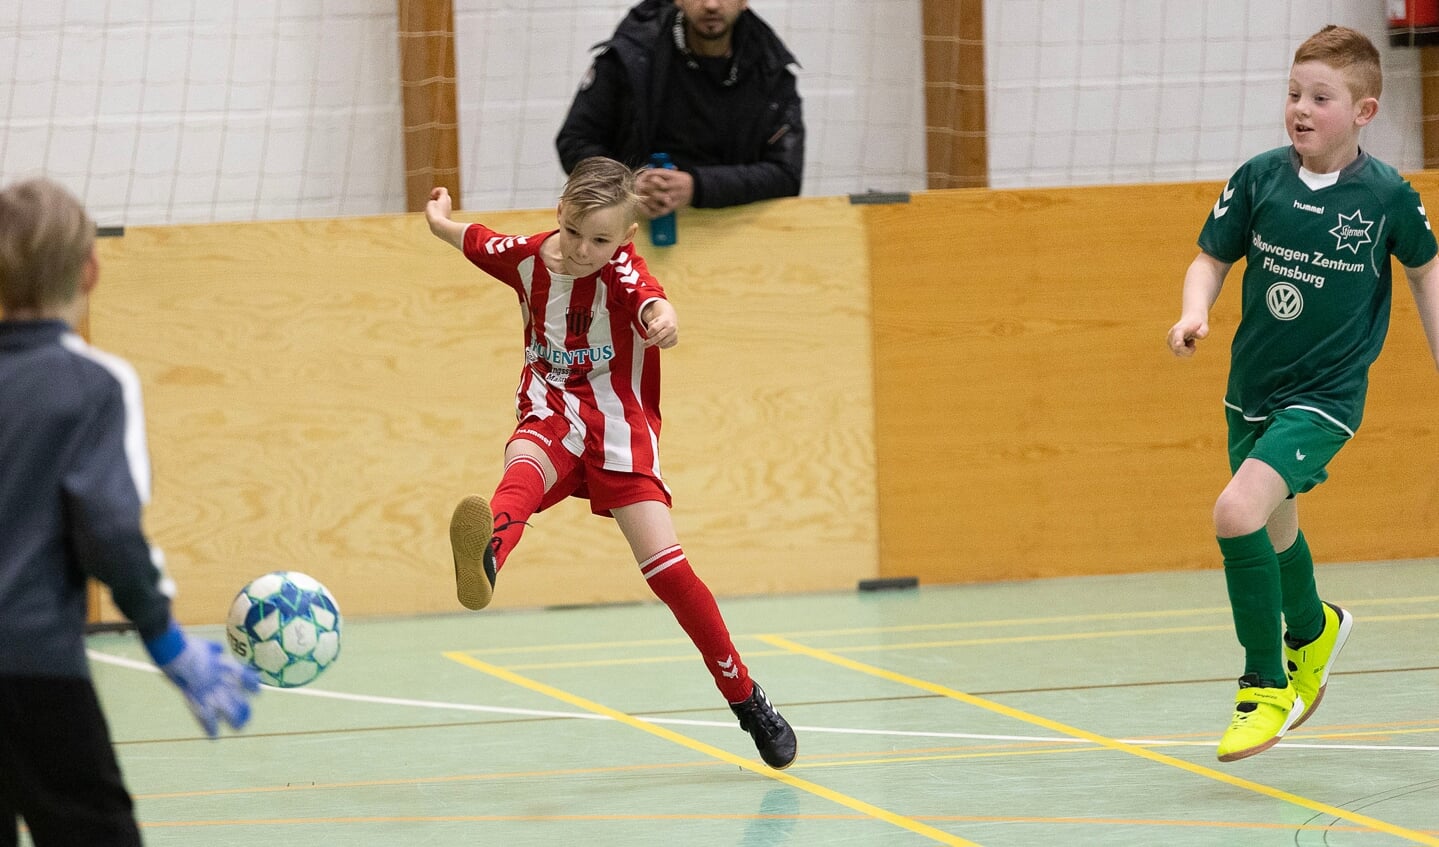 _58A0951.CR3
04FEB23
SdU indefodboldstævne i Slesvig.


Foto: Lars Salomonsen.